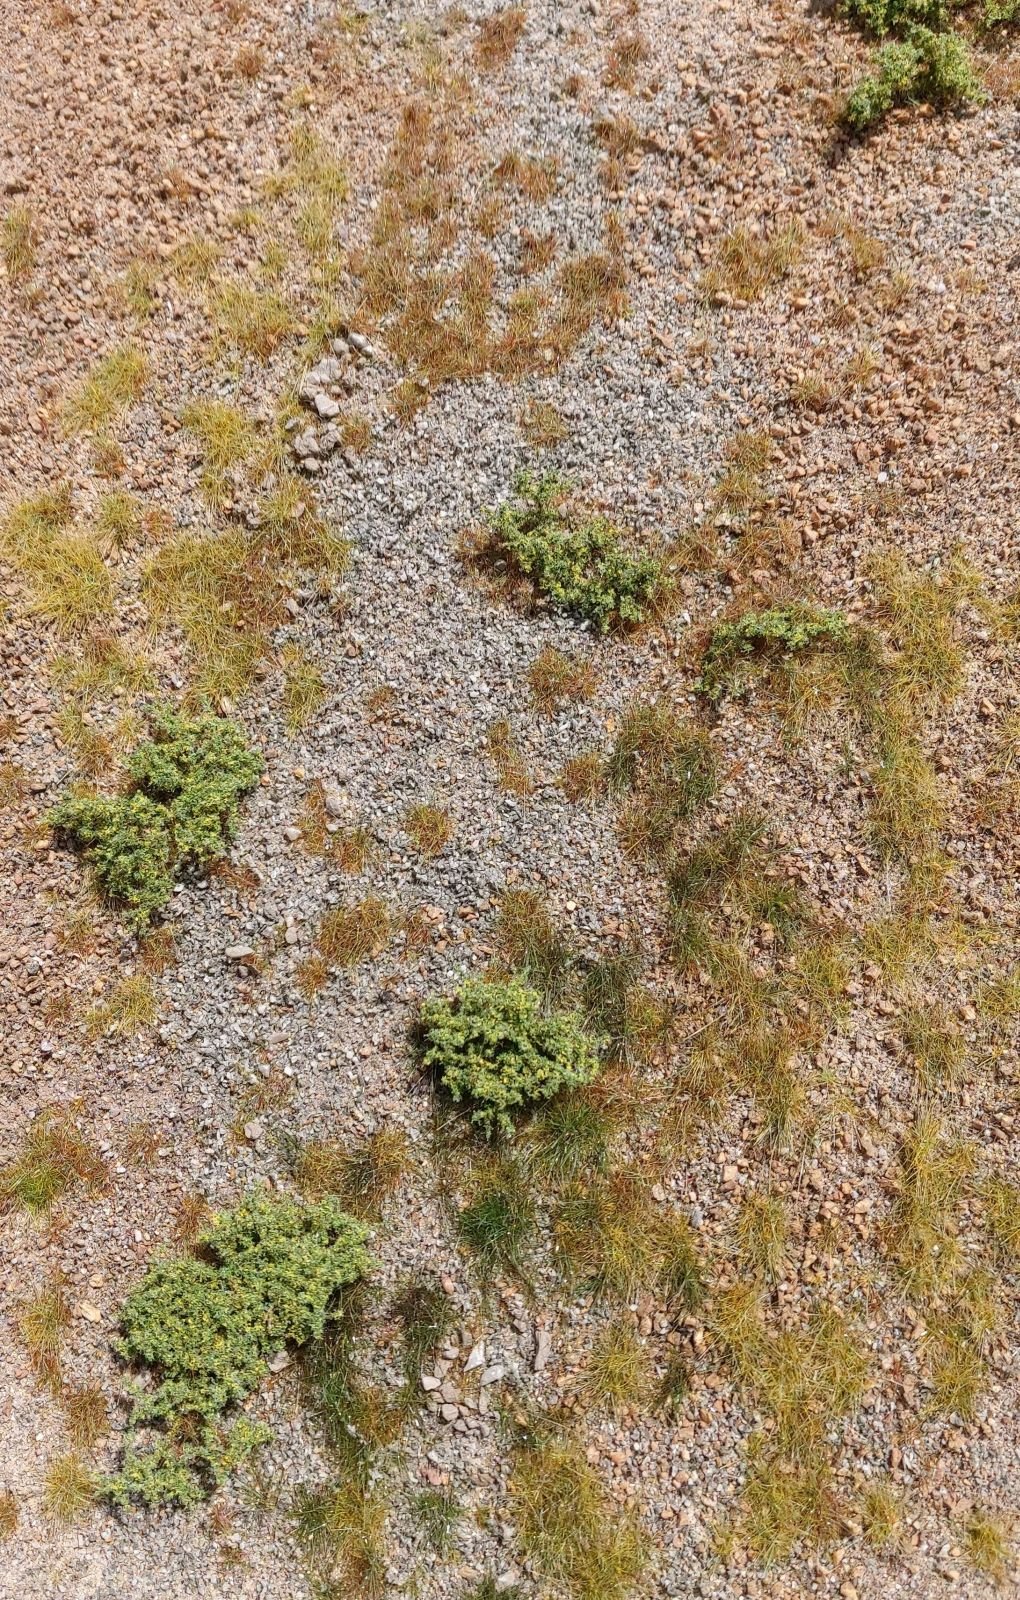 Afghanistan rocky terrain (18x28cm)